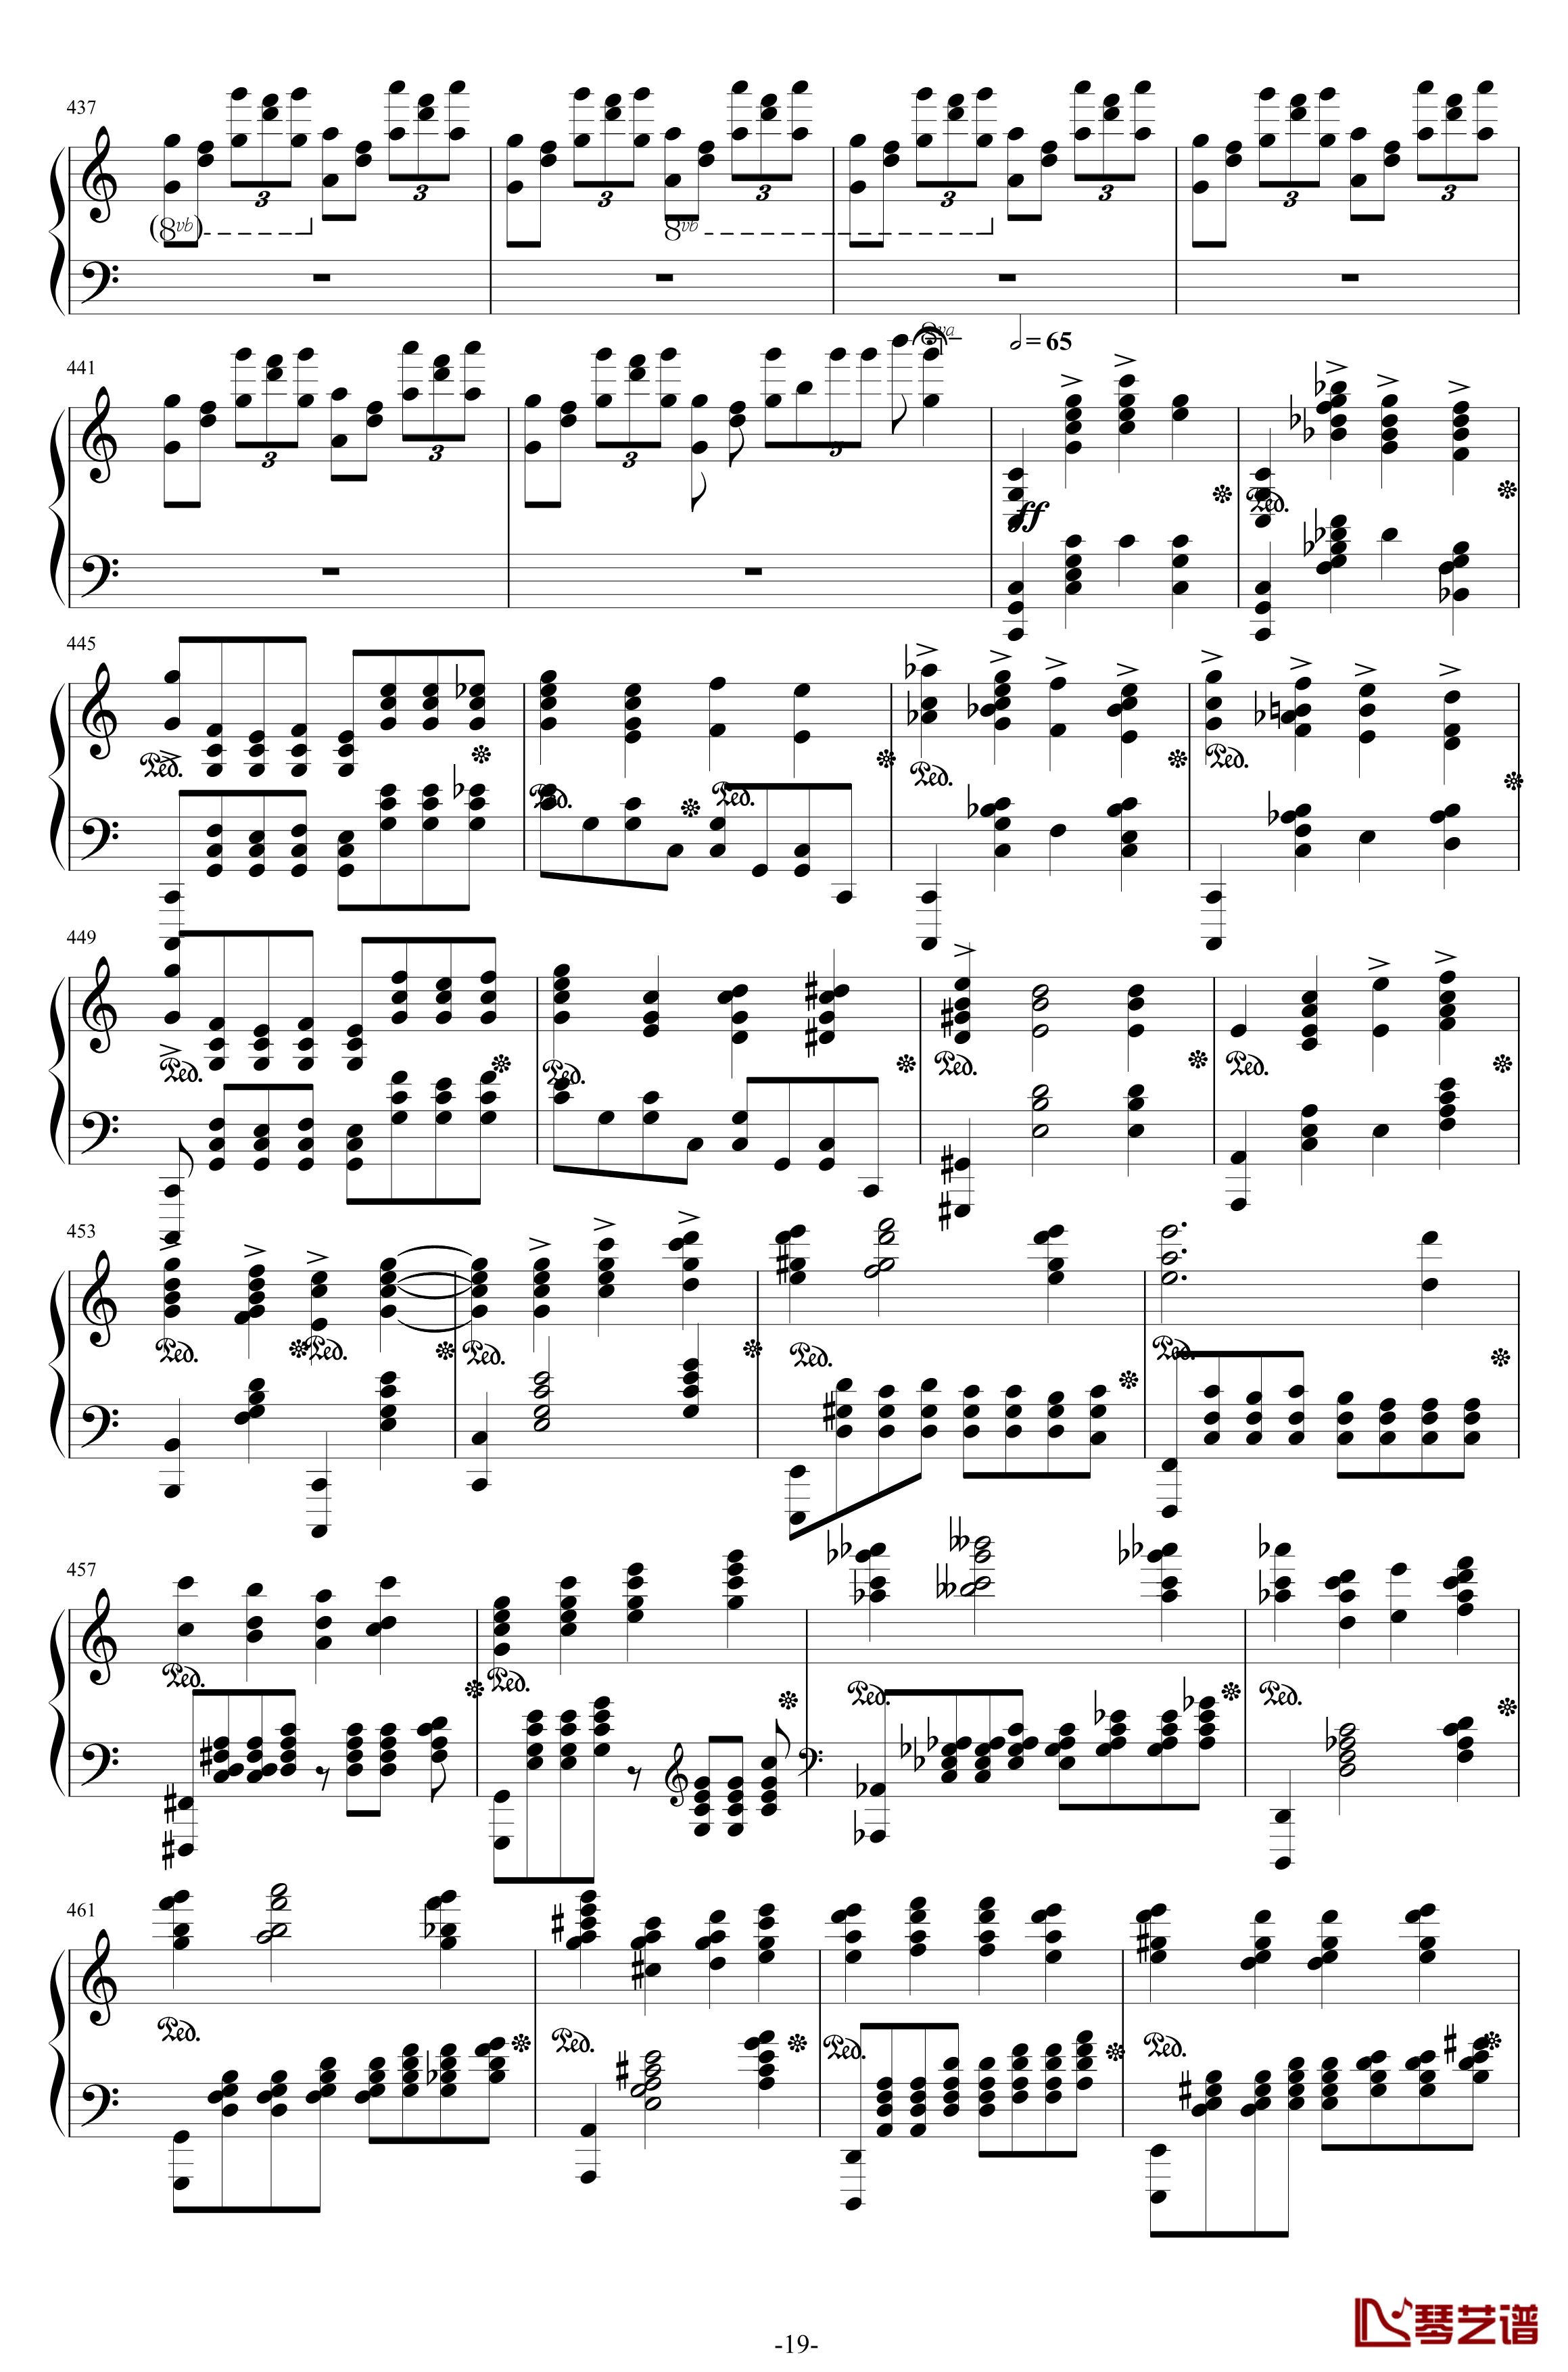 第二钢琴协奏曲钢琴谱--第三乐章独奏版-拉赫马尼若夫-c小调19